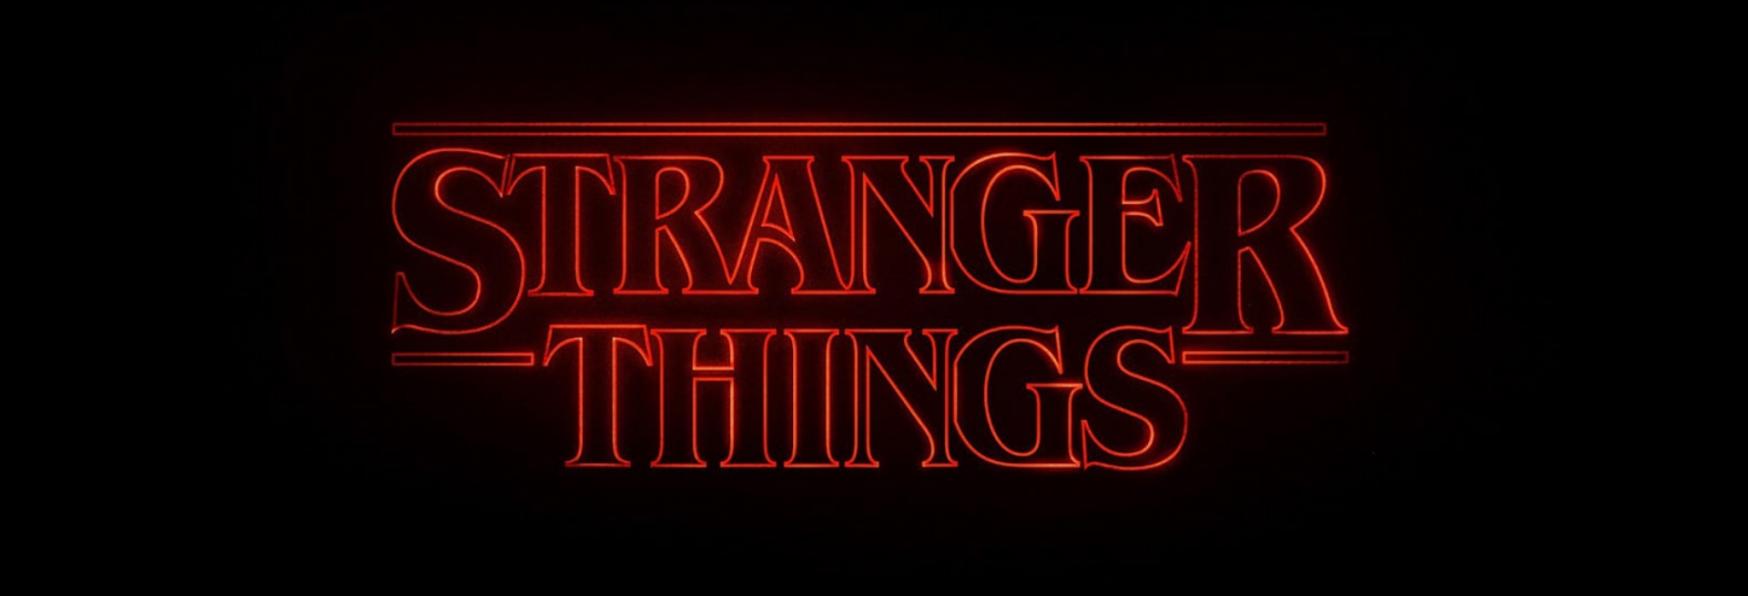 Stranger Things 4: nemmeno il Cast sa quanto manca alla Fine delle Riprese della nuova Stagione